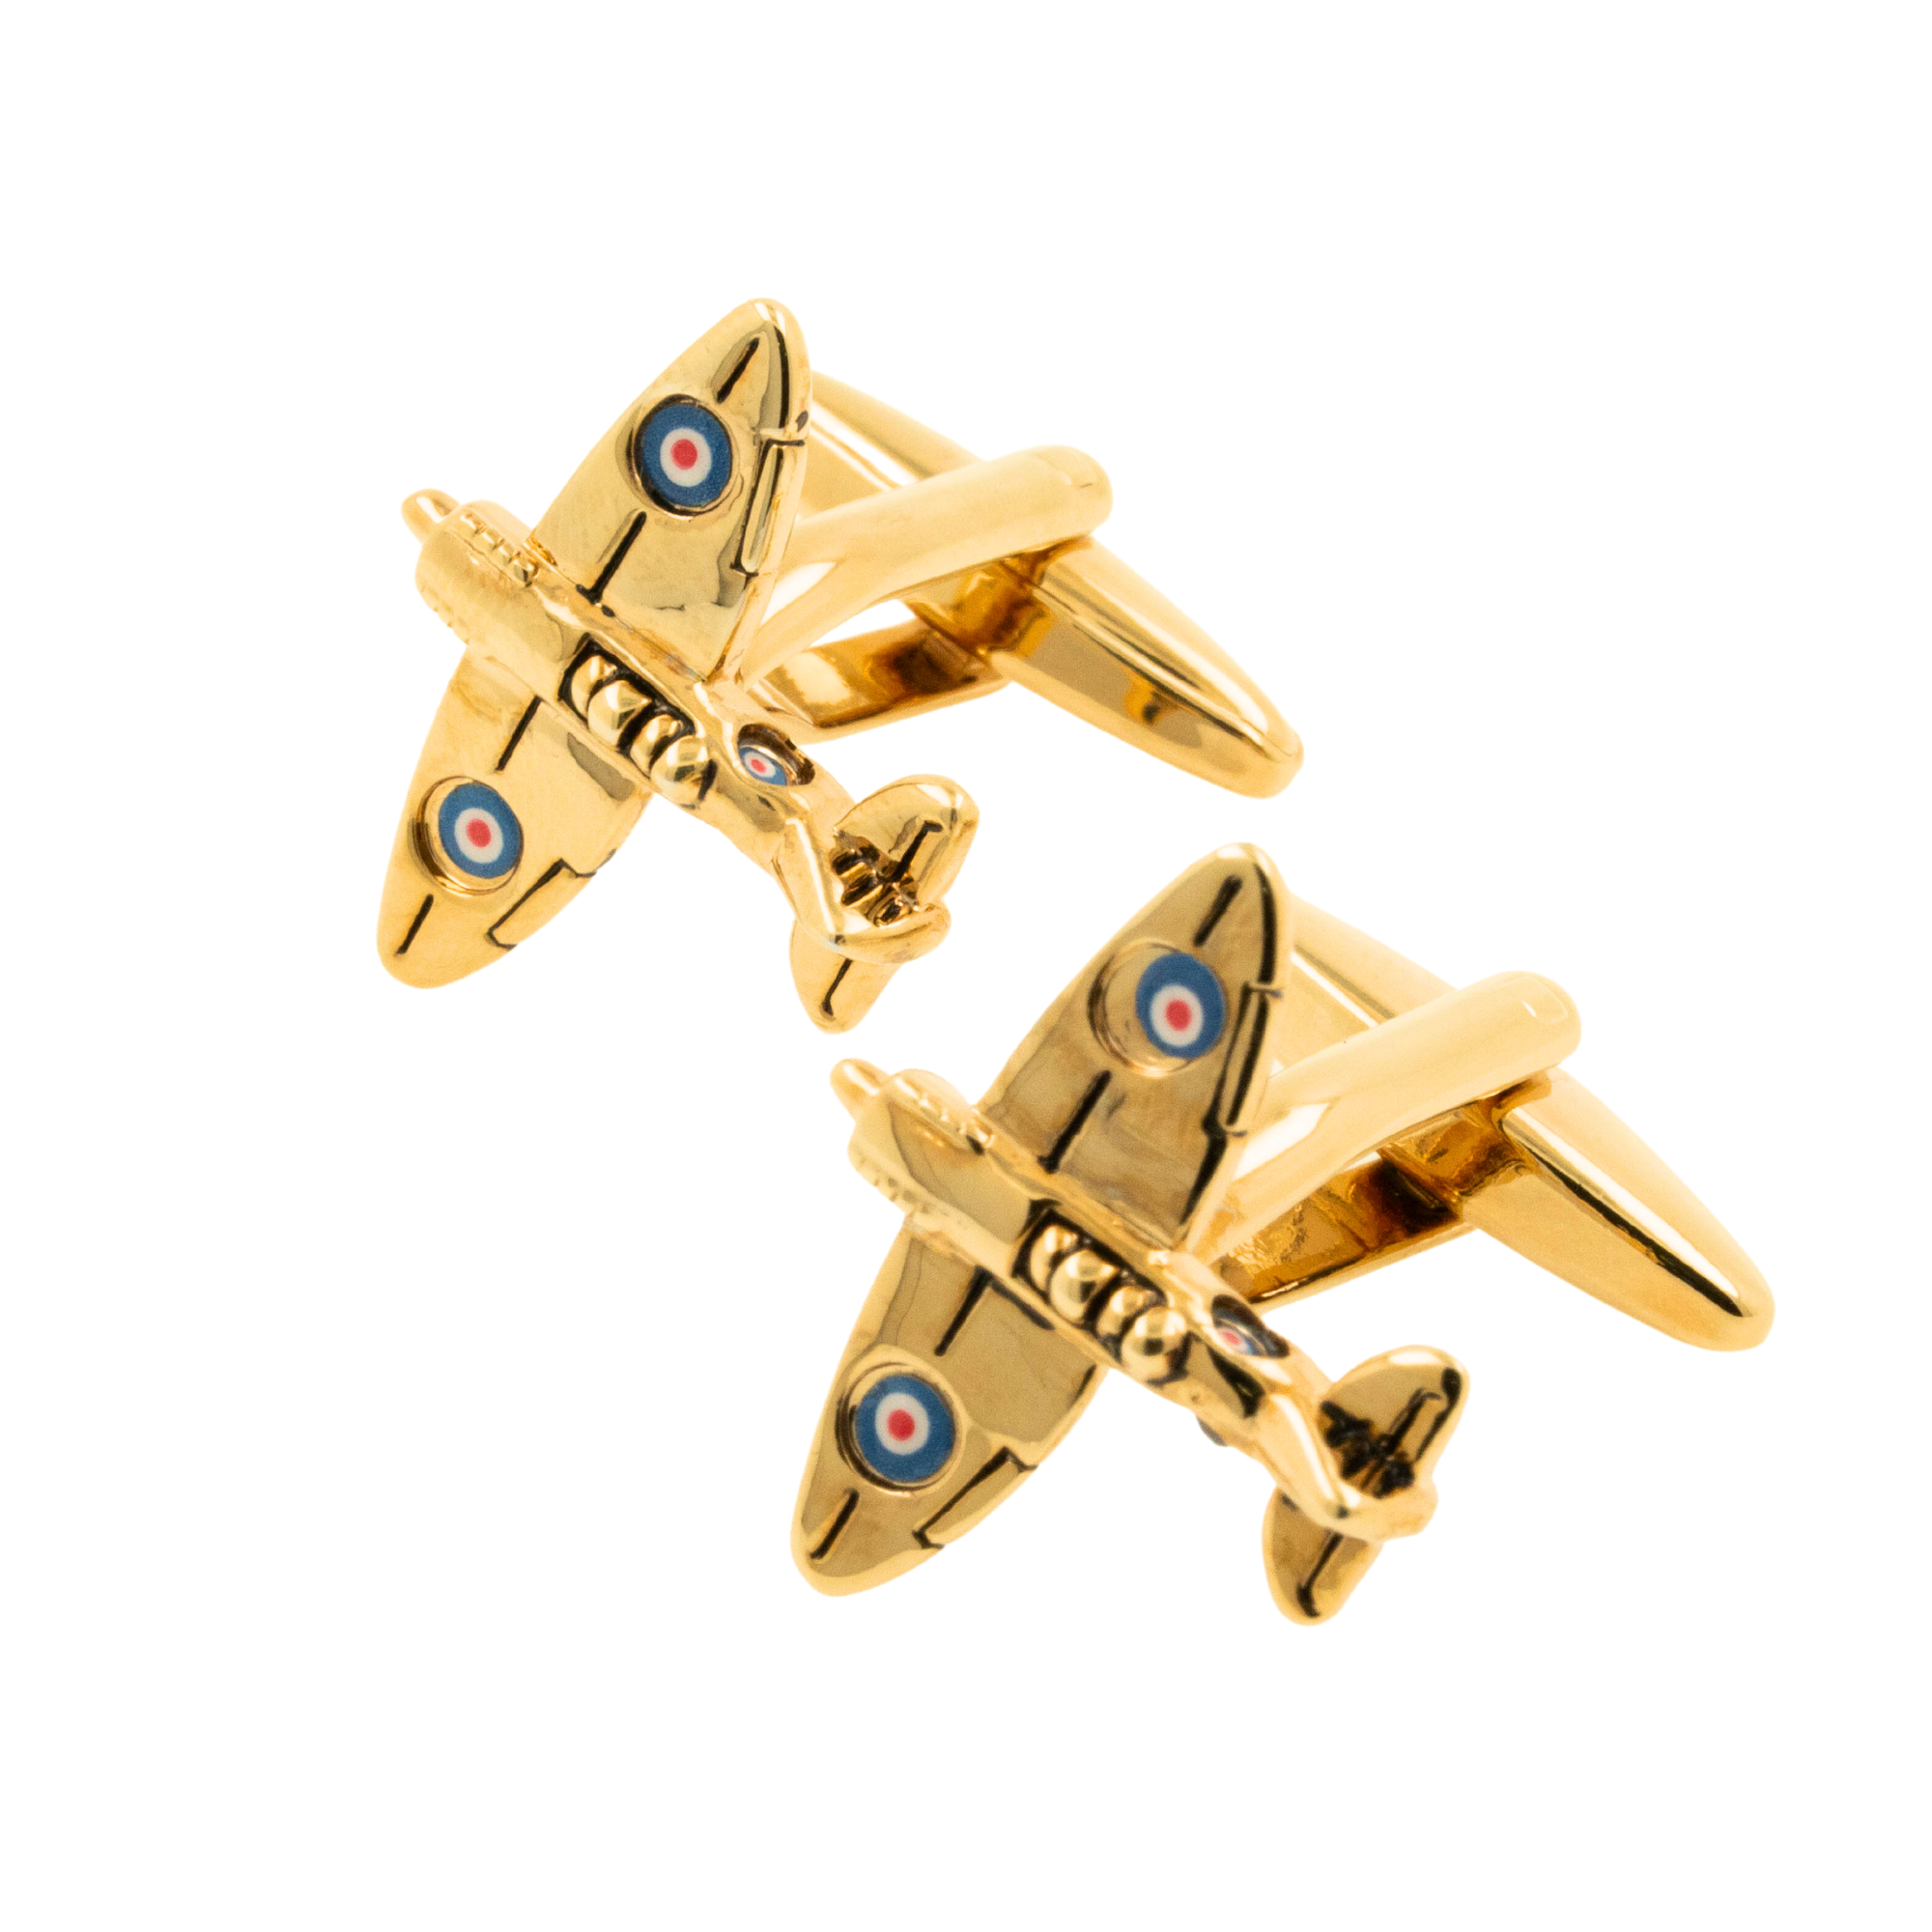 Gold Spitfire Airplane Cufflinks